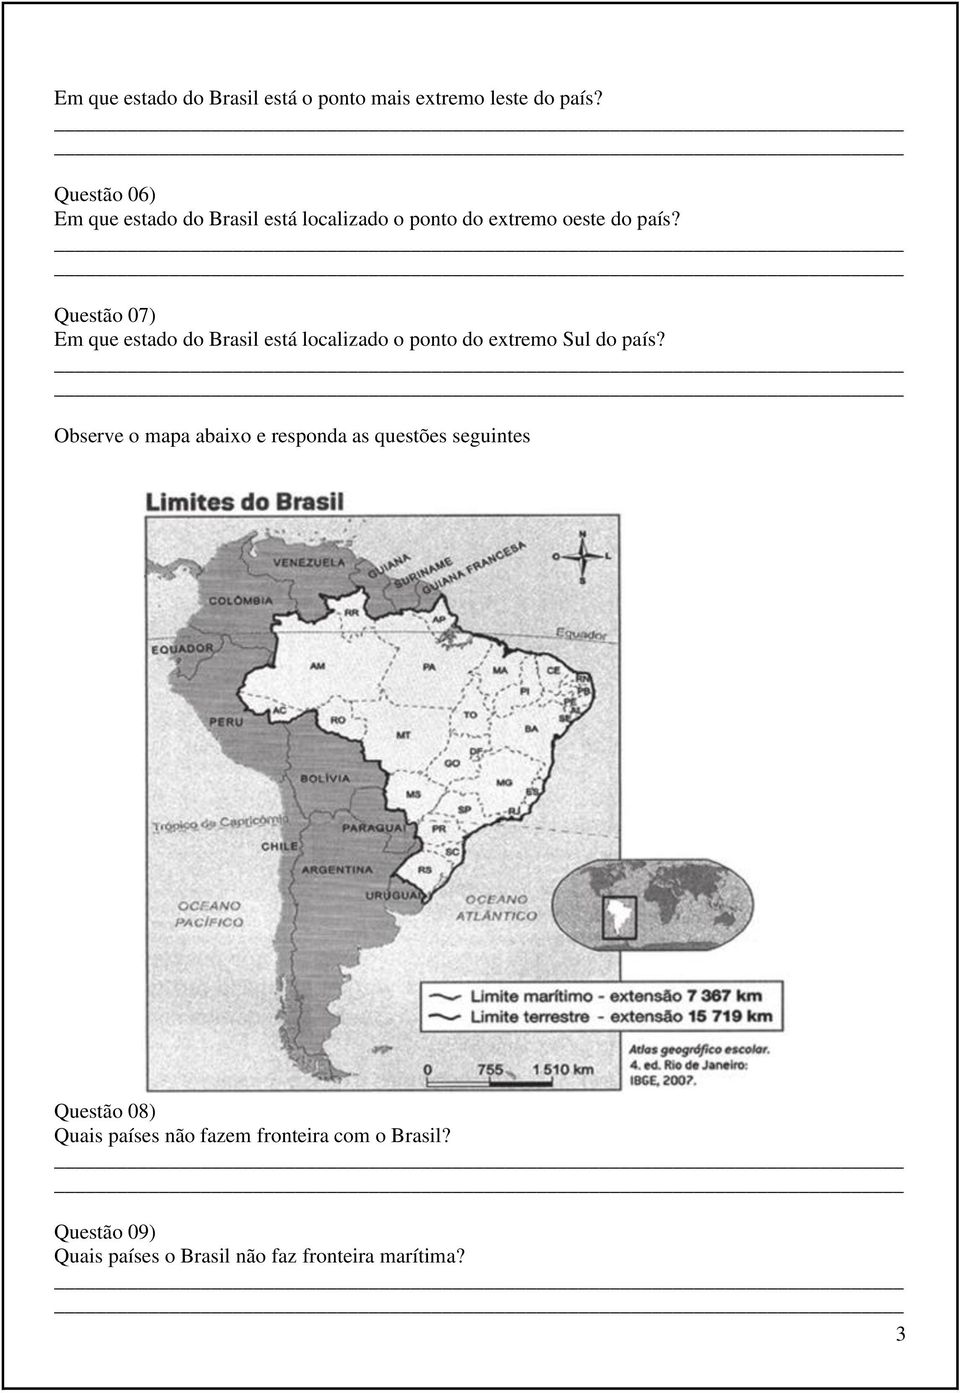 Questão 07) Em que estado do Brasil está localizado o ponto do extremo Sul do país?